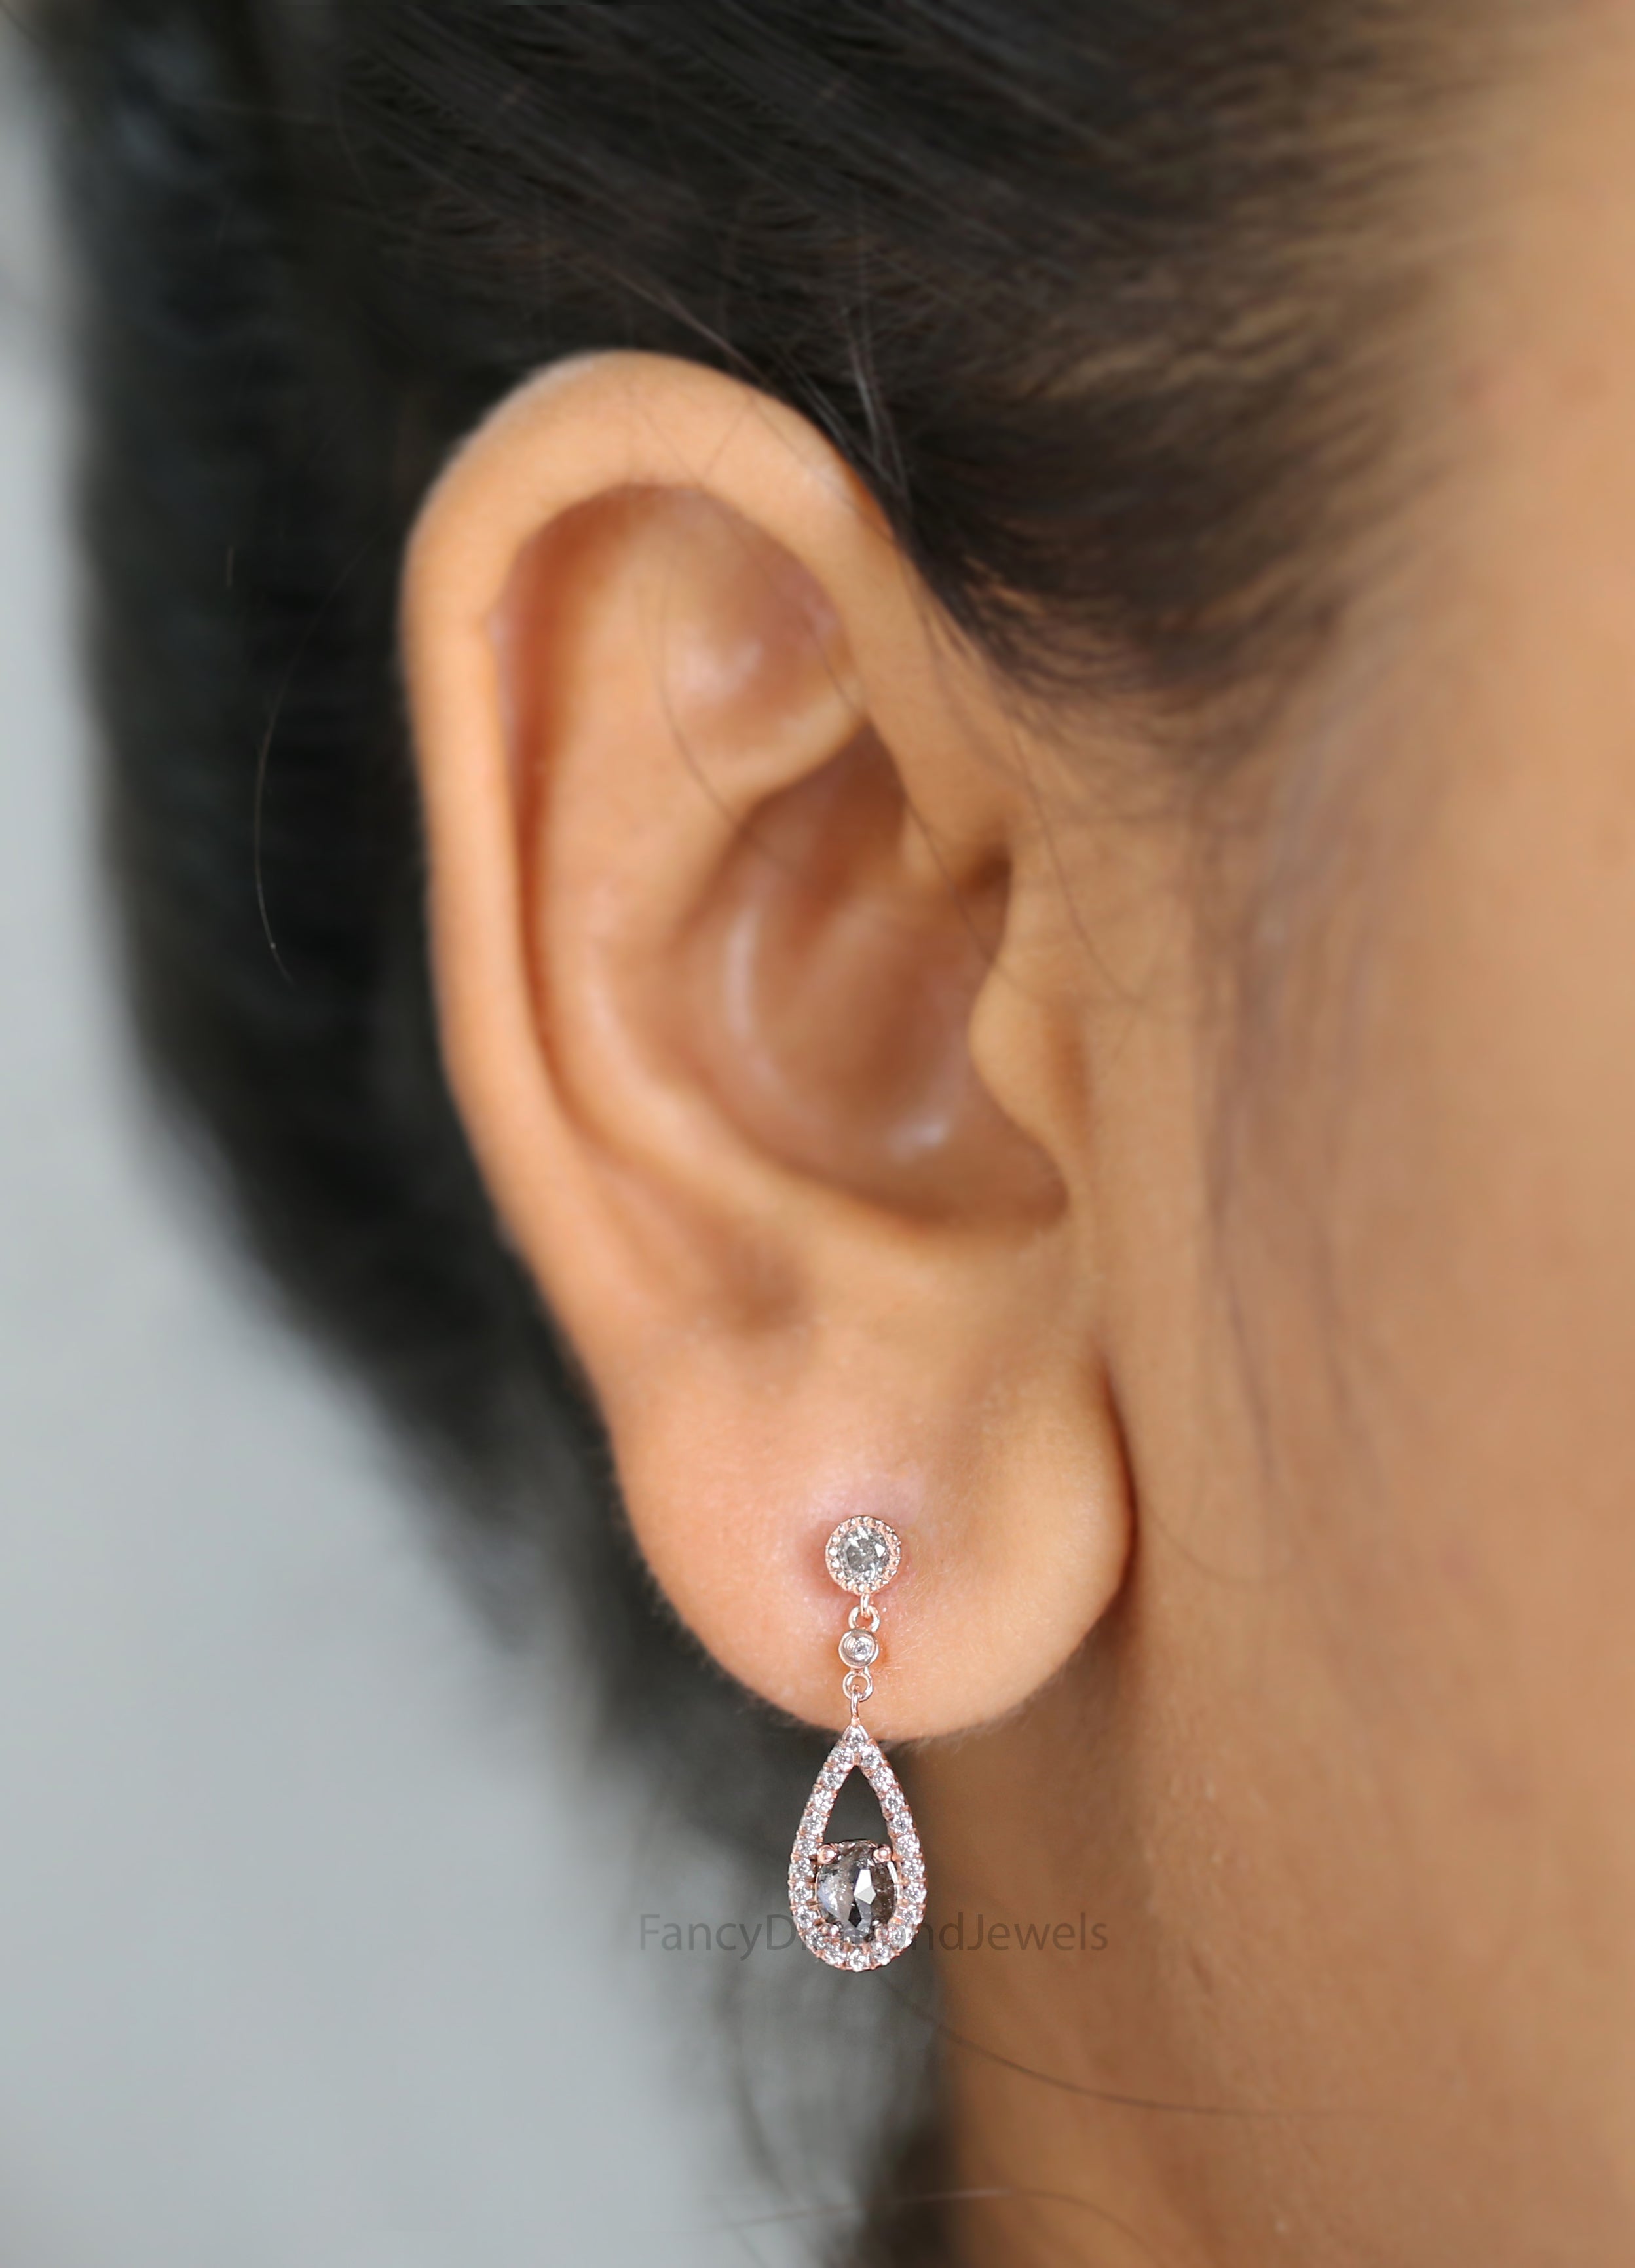 Oval Salt And Pepper Diamond Earring, Oval Shape Earring, Oval Cut Earring, Engagement Earring, Earlobe Earrings, Earrings Jewelry, KDL2772